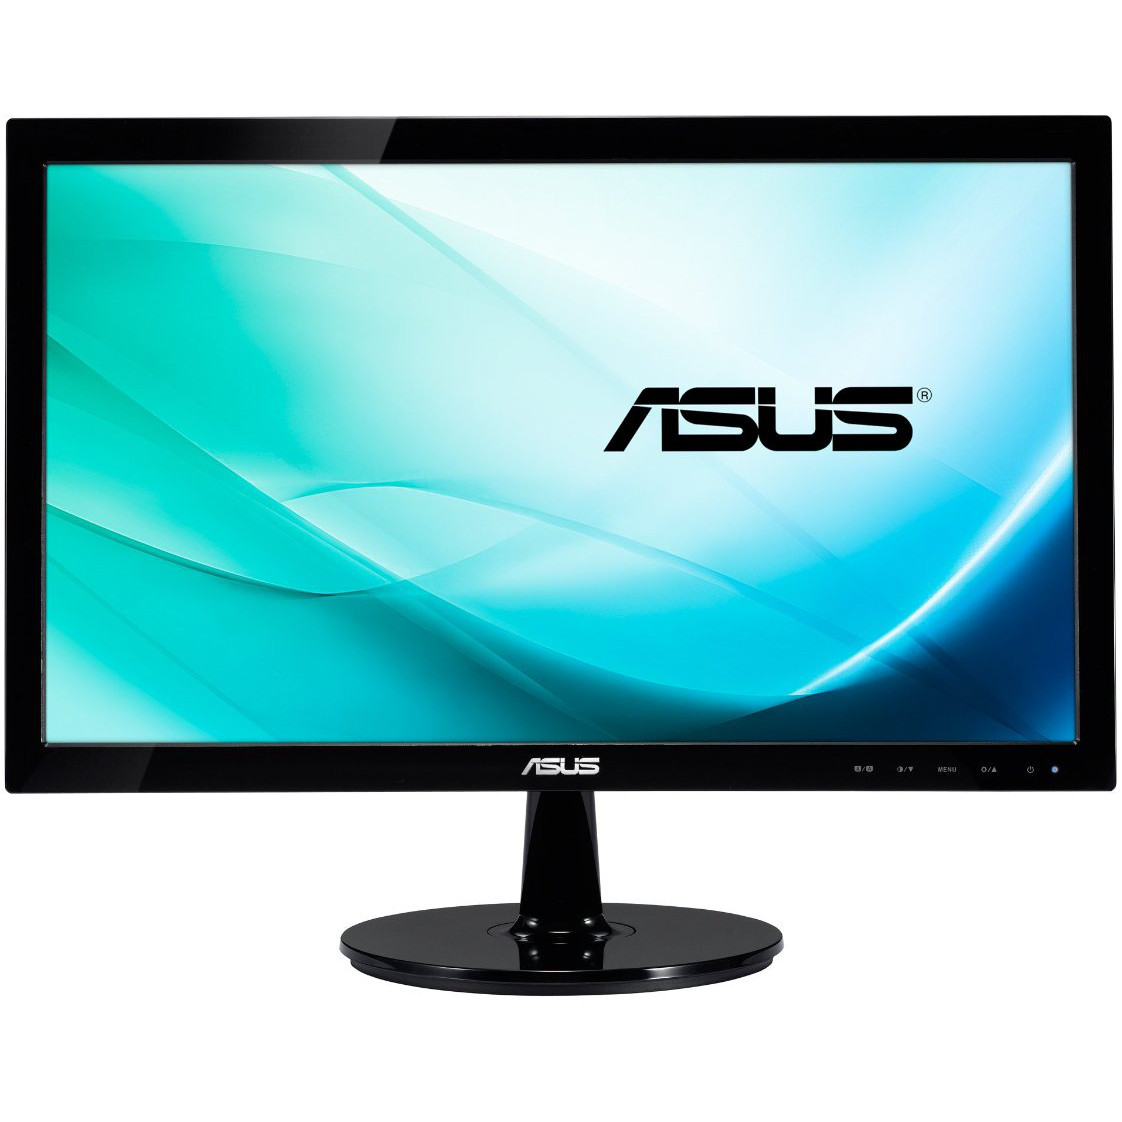  Monitor LED Asus VS207T-P, 19.5", VGA, Negru 